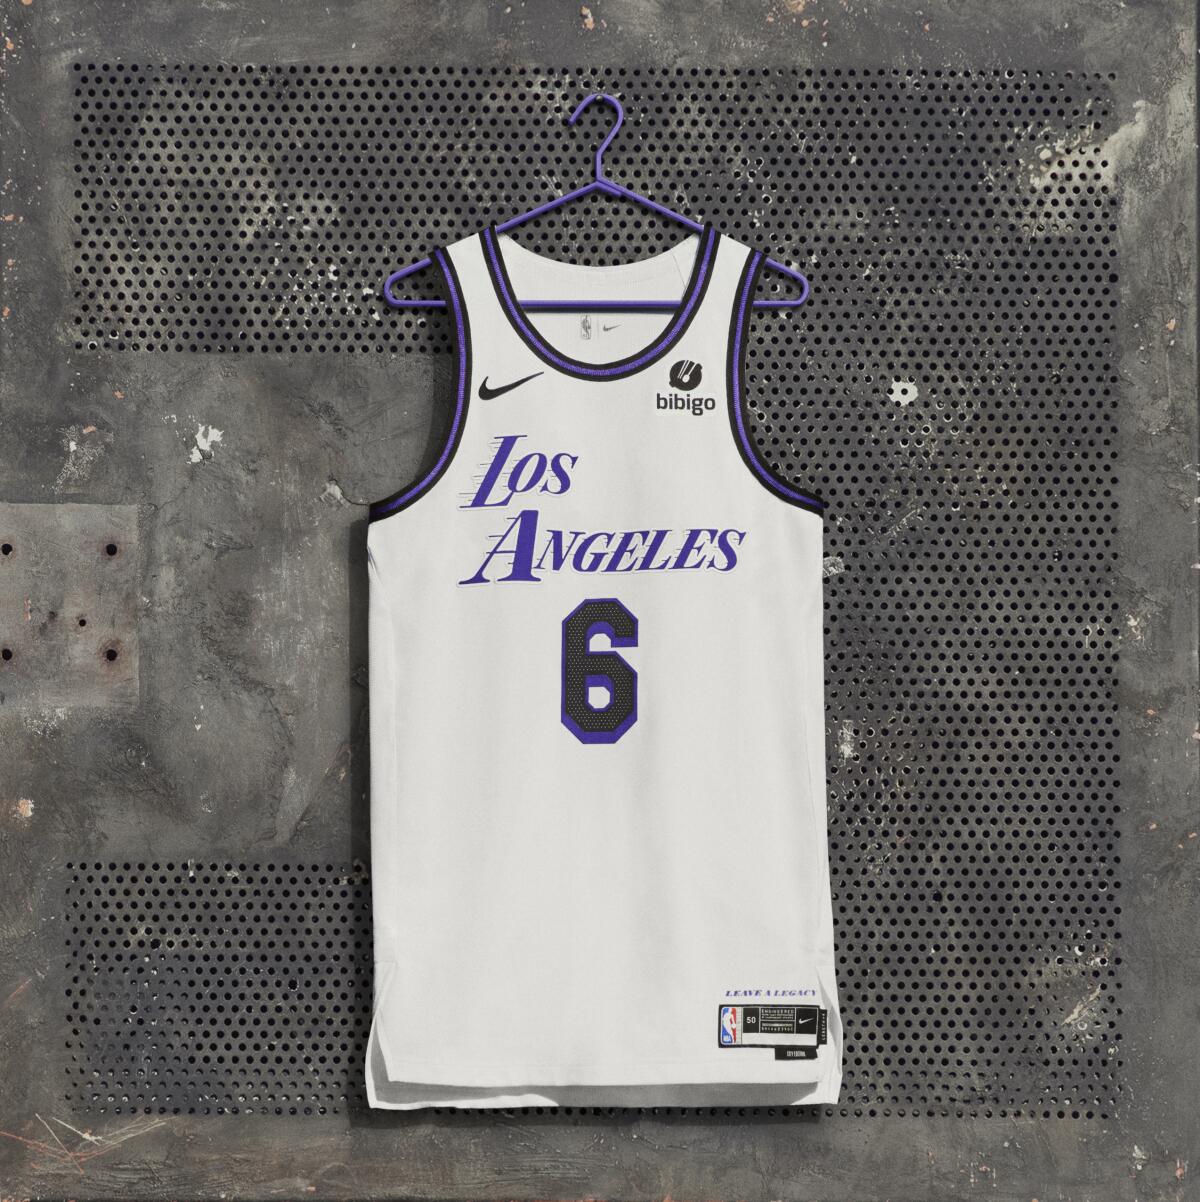 Memphis Grizzlies unveil 2022-23 City Edition uniforms